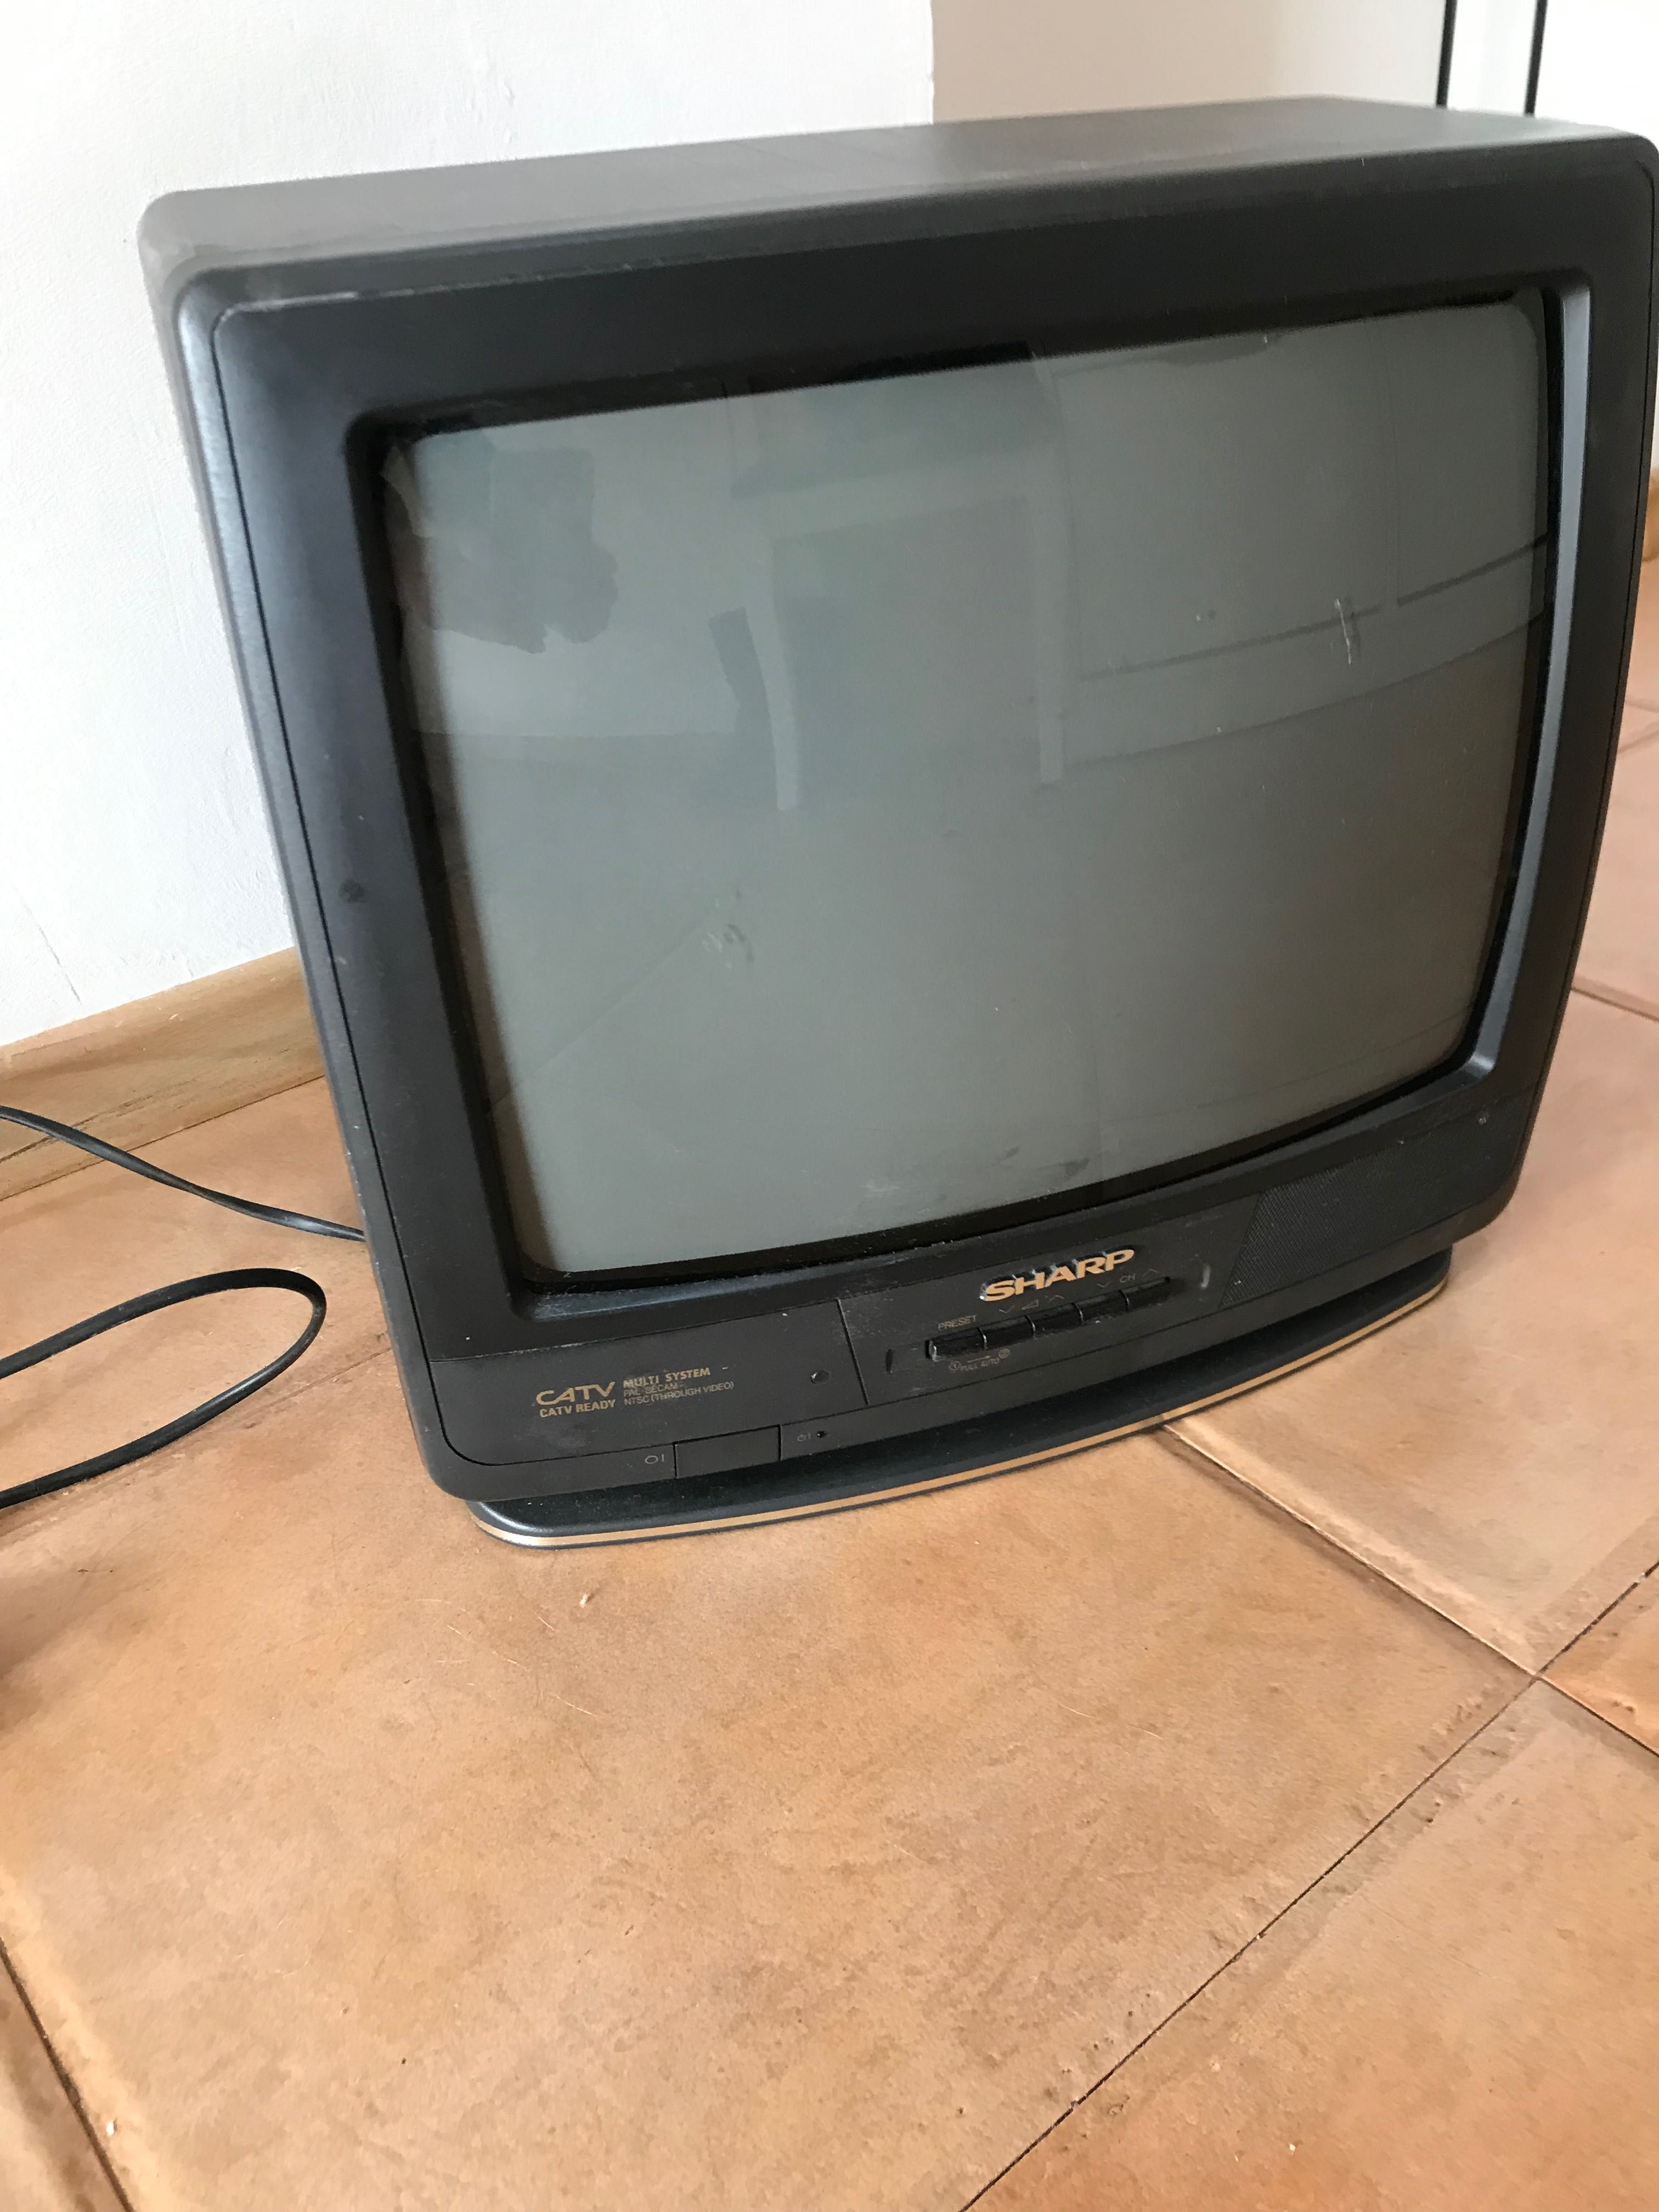 Телевизор Панасоник -20 инча, работещ цена 60лв предложи цена